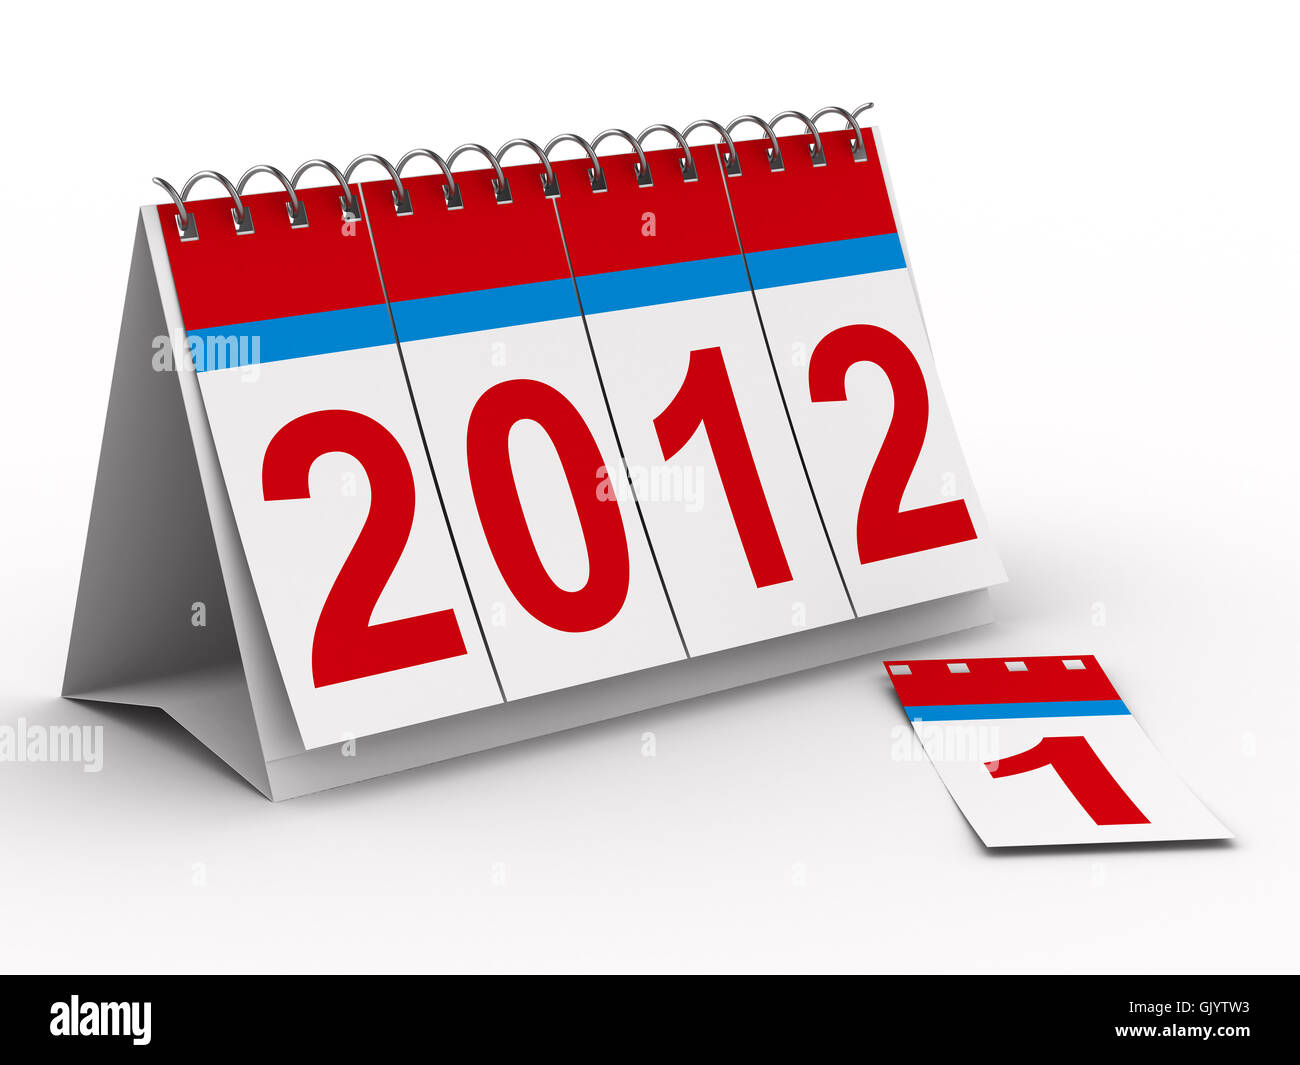 Calendrier de l'année 2012 sur fond blanc. Image 3D isolés Banque D'Images